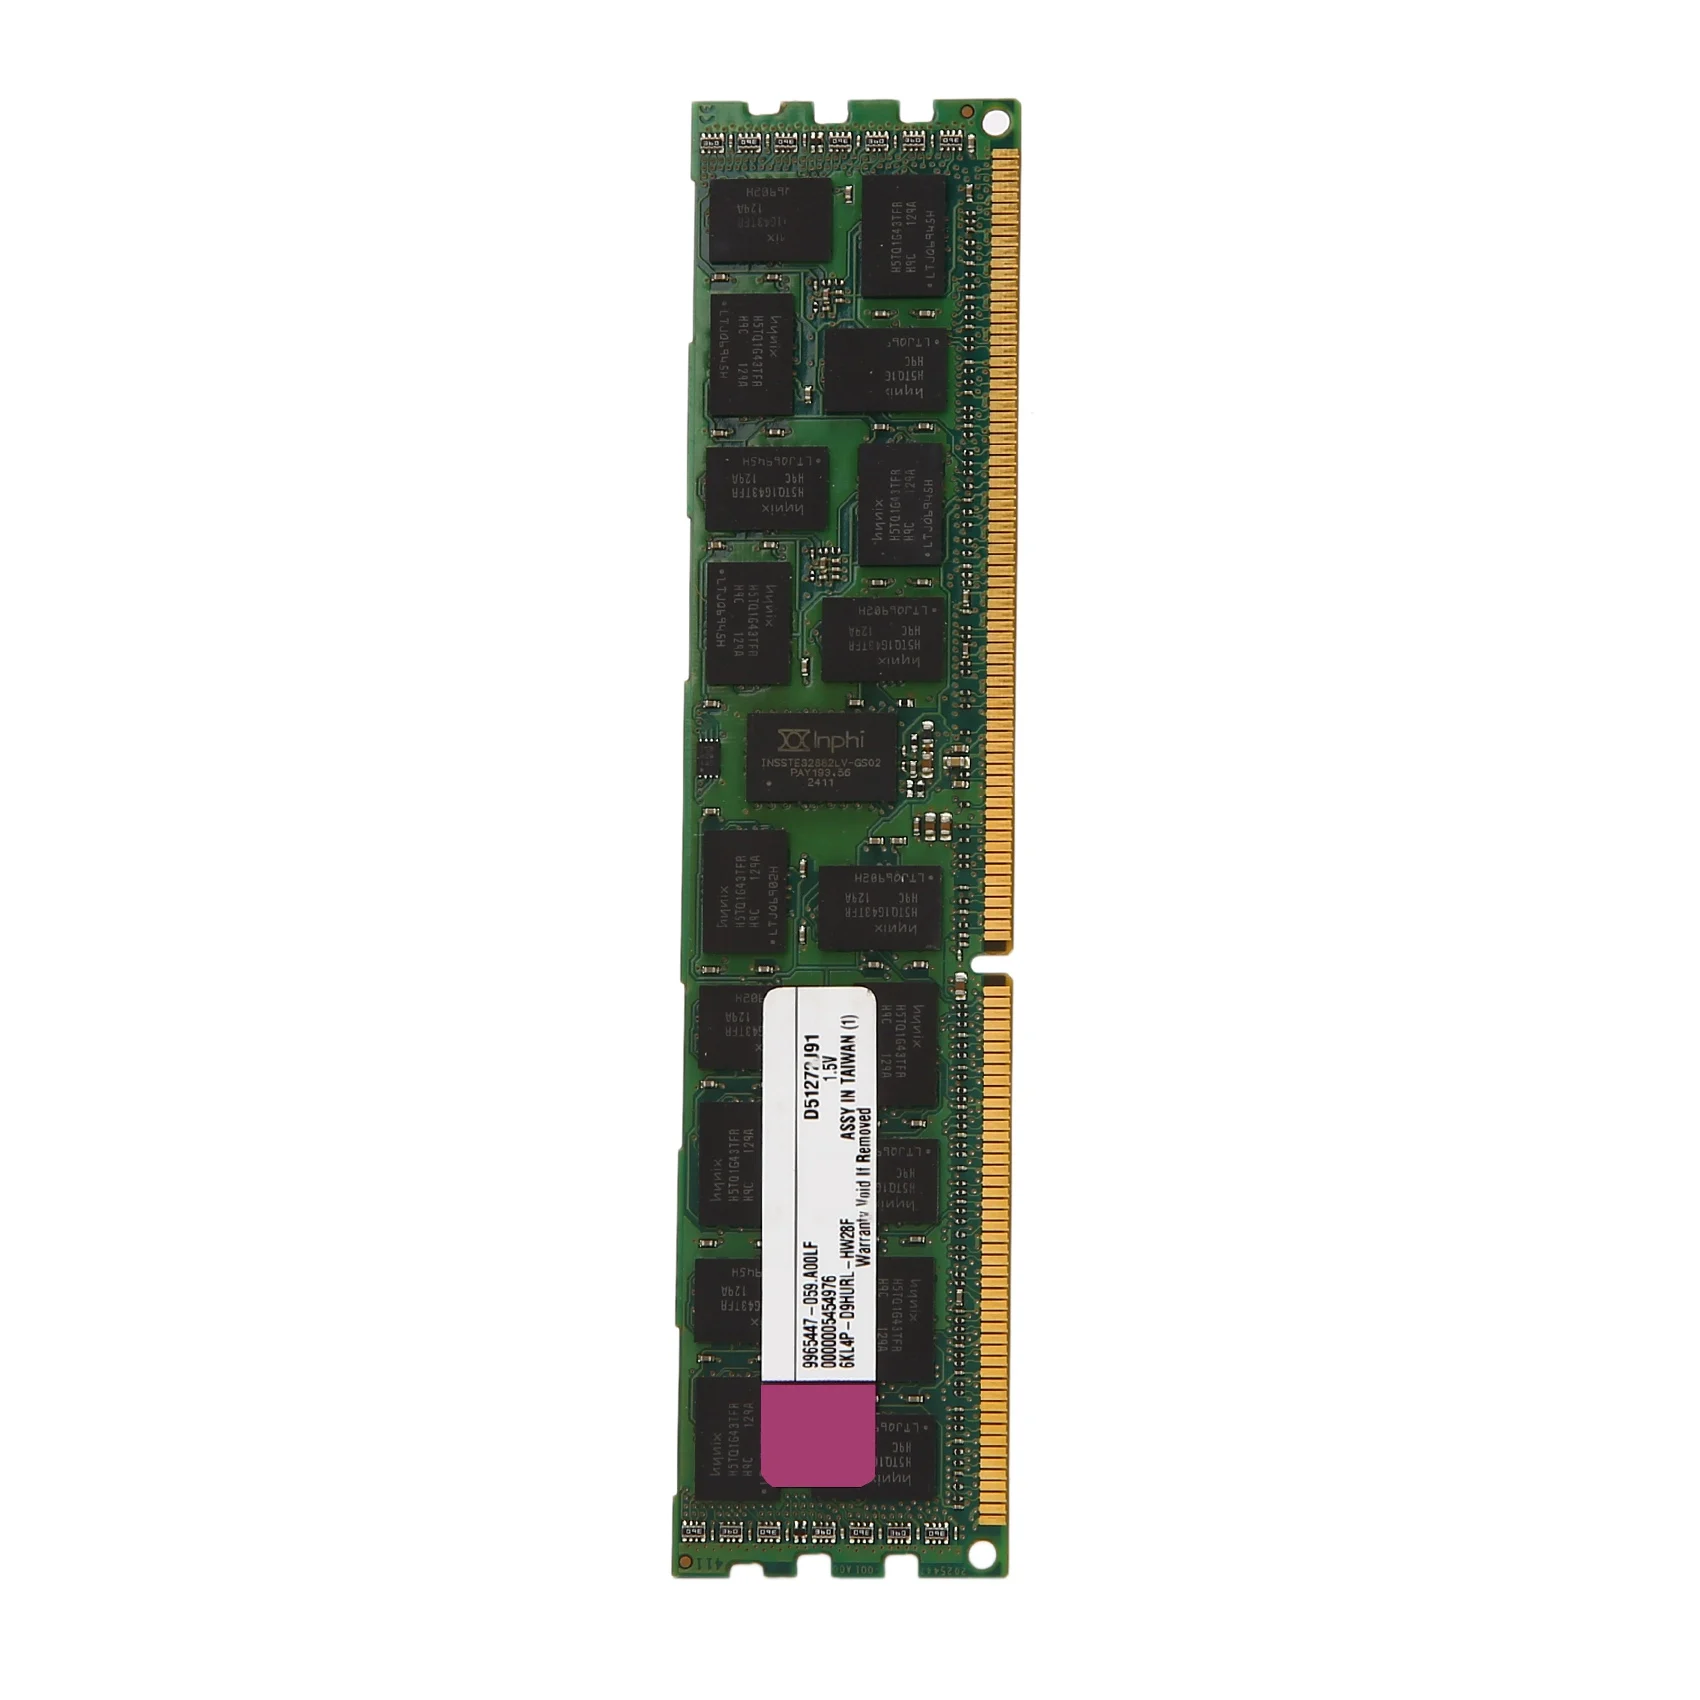 4 ГБ оперативной памяти DDR3 с частотой 1333 МГц PC3-10600 1,5 В DIMM 240 контактов для настольной оперативной памяти Intel Memoria